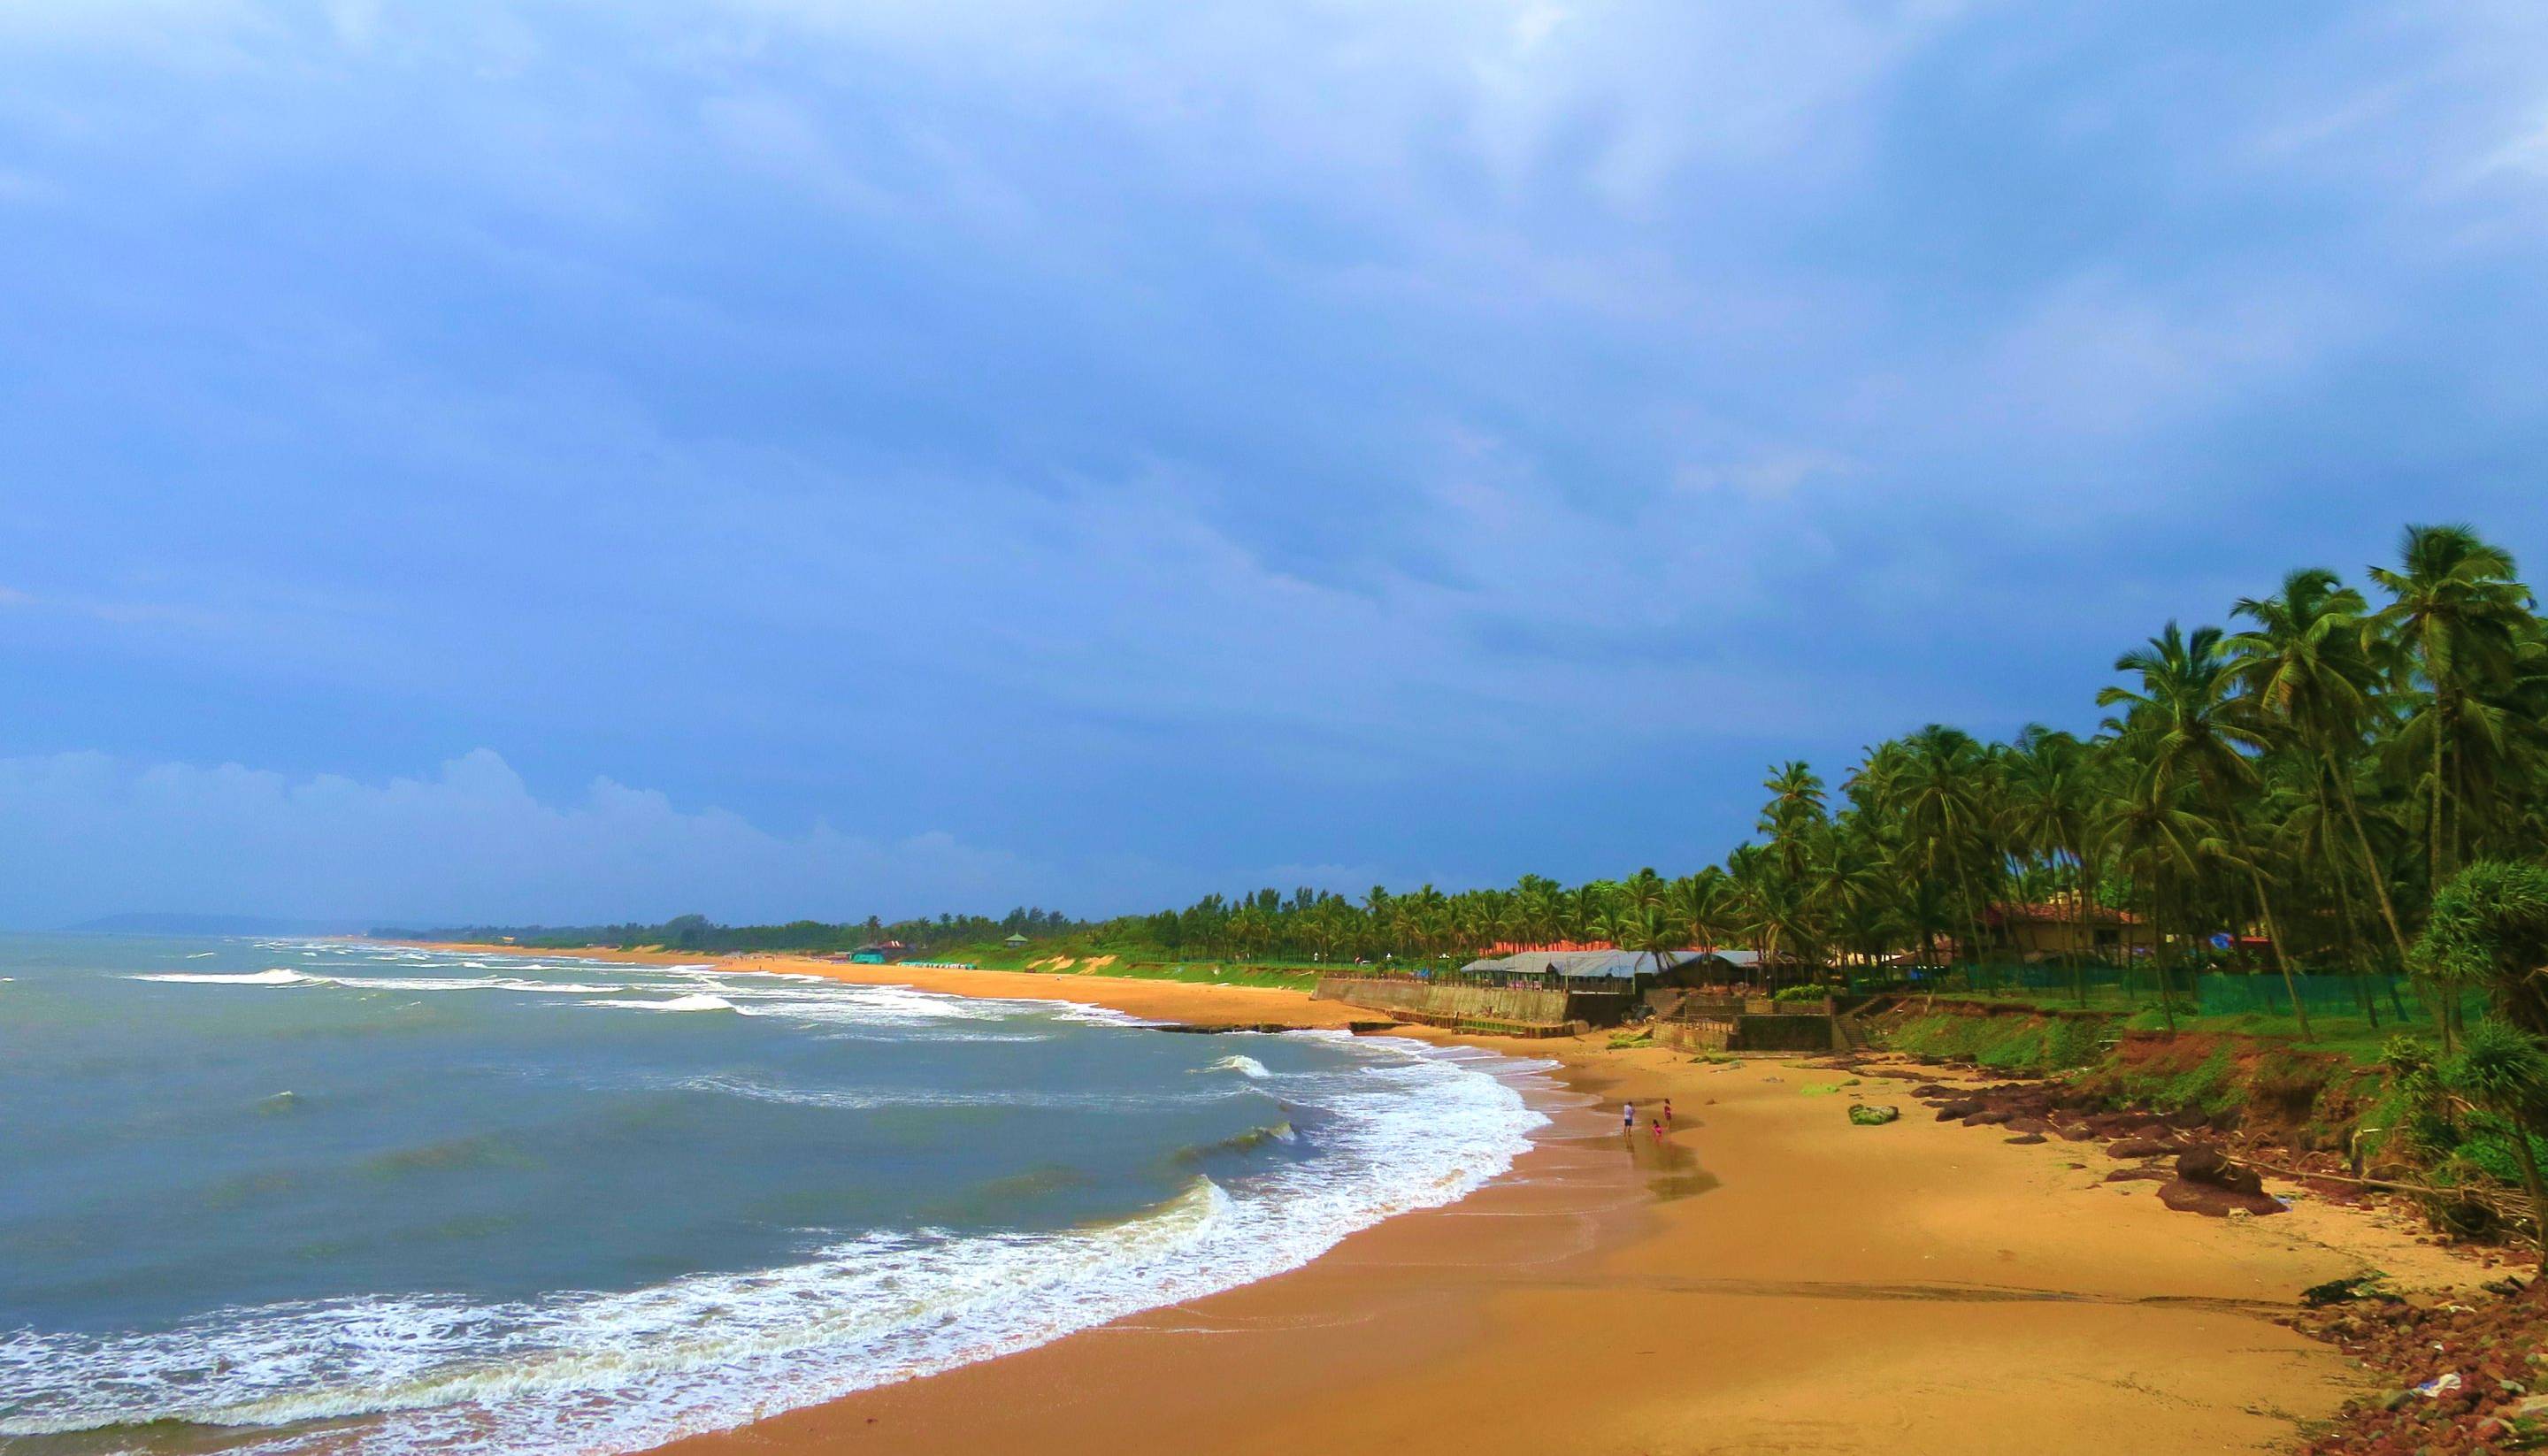 Arrivée à Goa, aux superbes plages